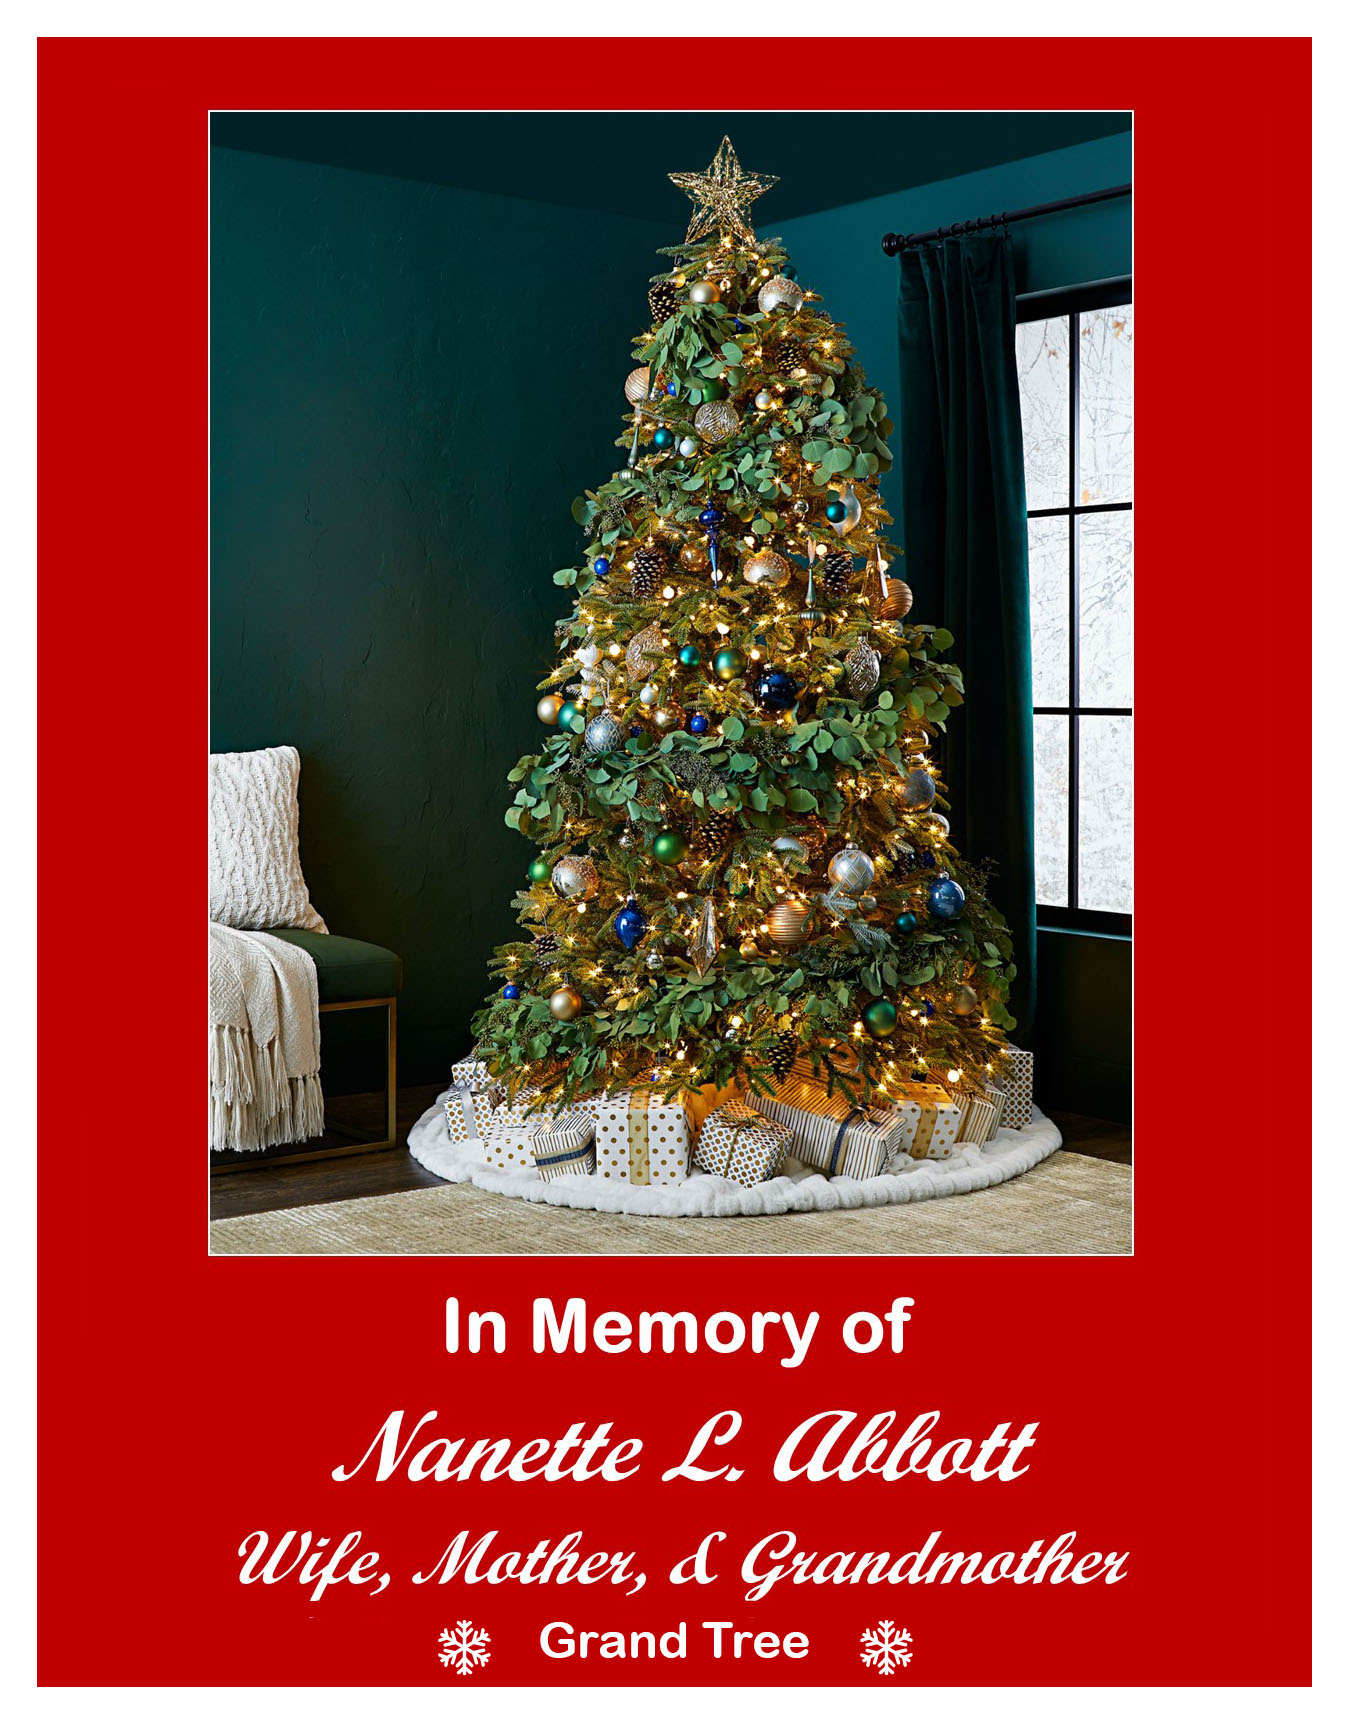 In memory of Nanette L. Abbott